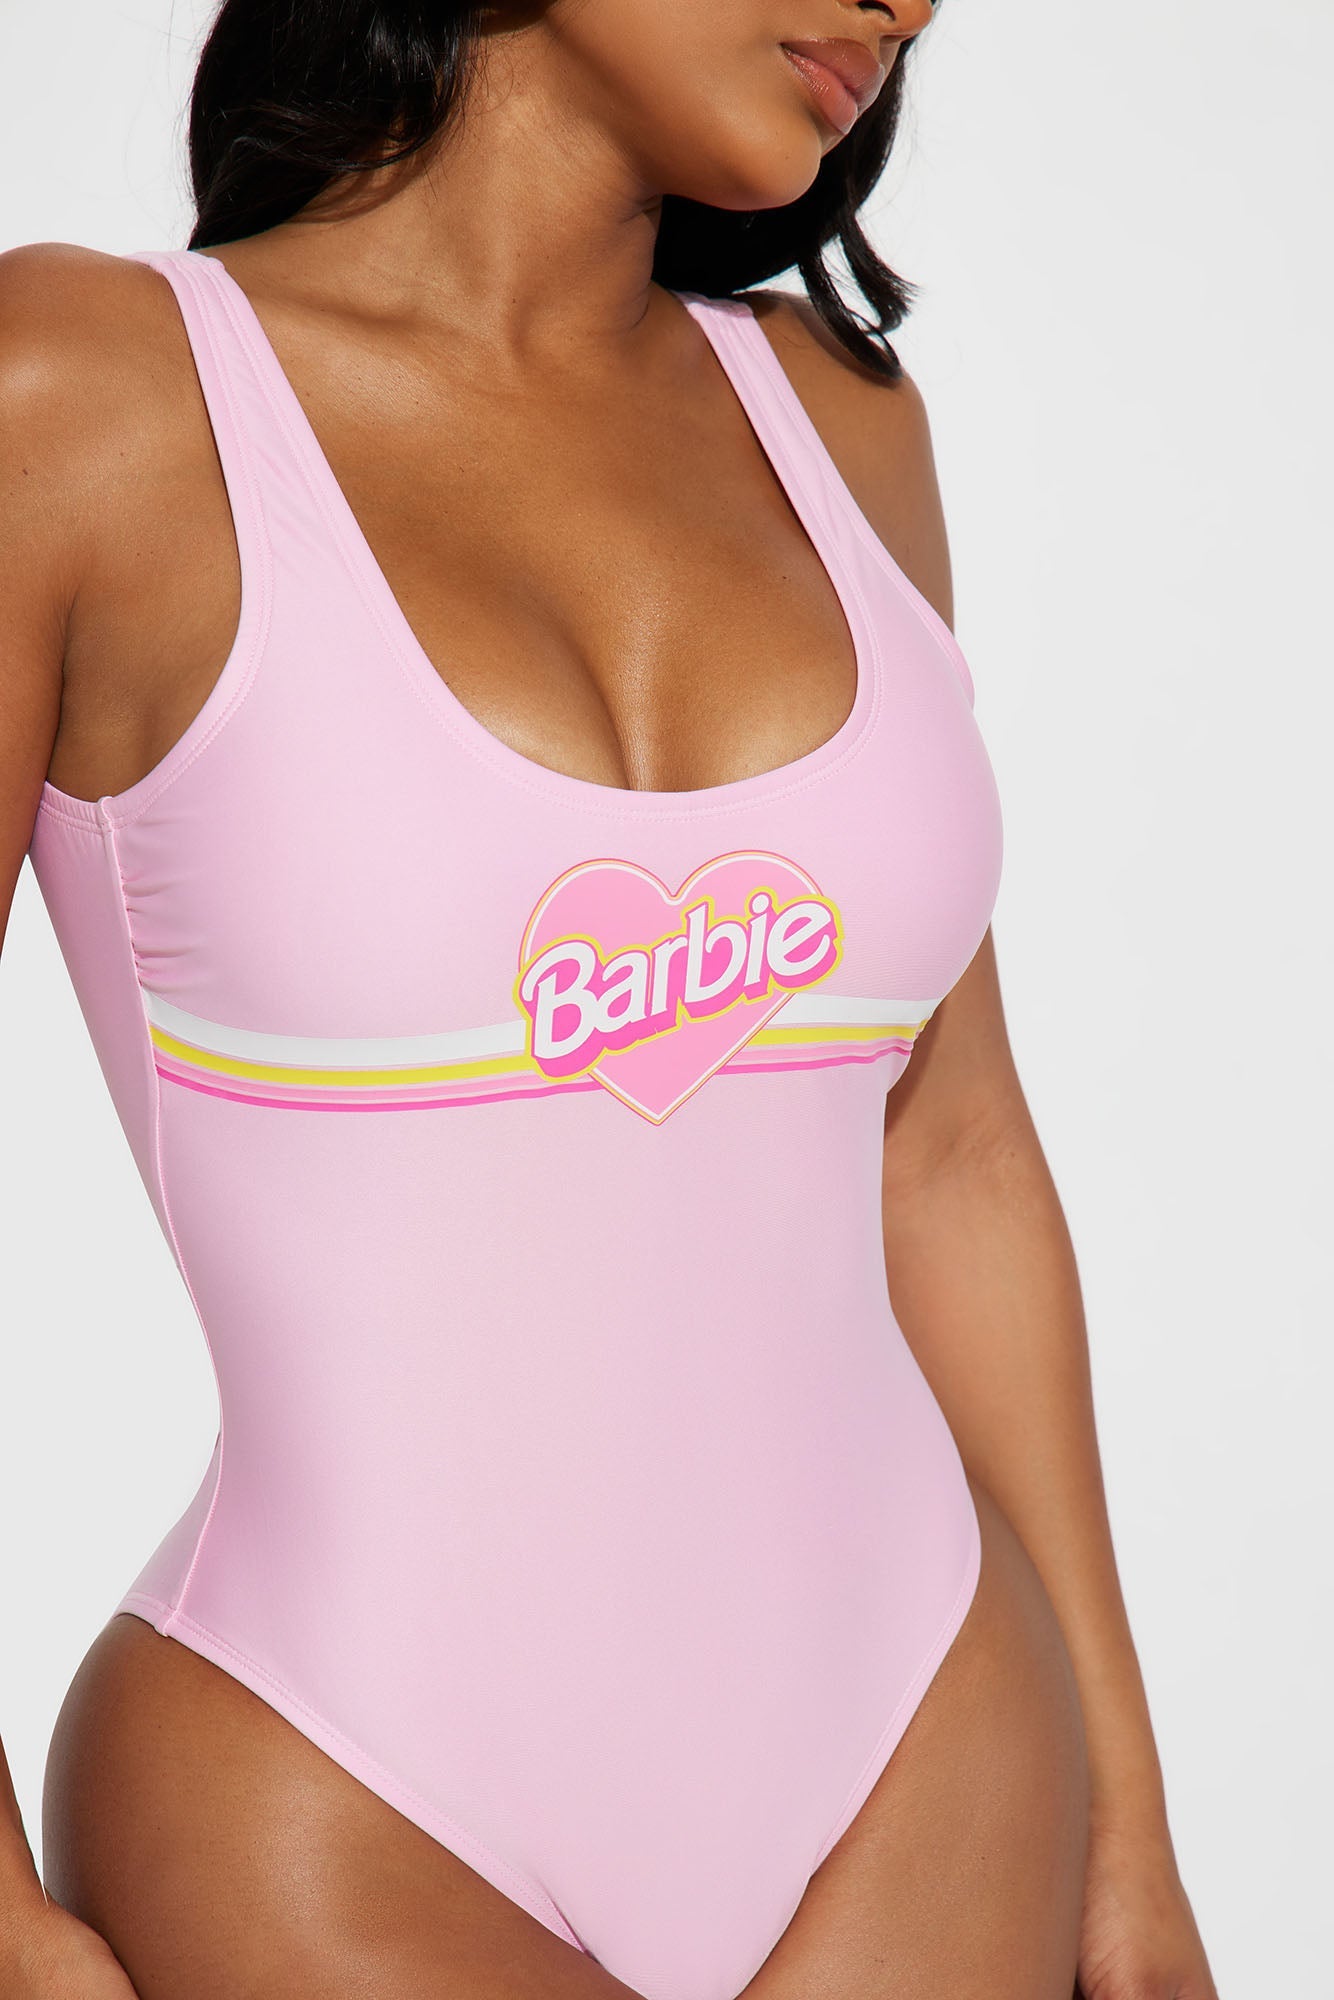 Barbie Sun And Fun 1 Piece Swimsuit - Pink